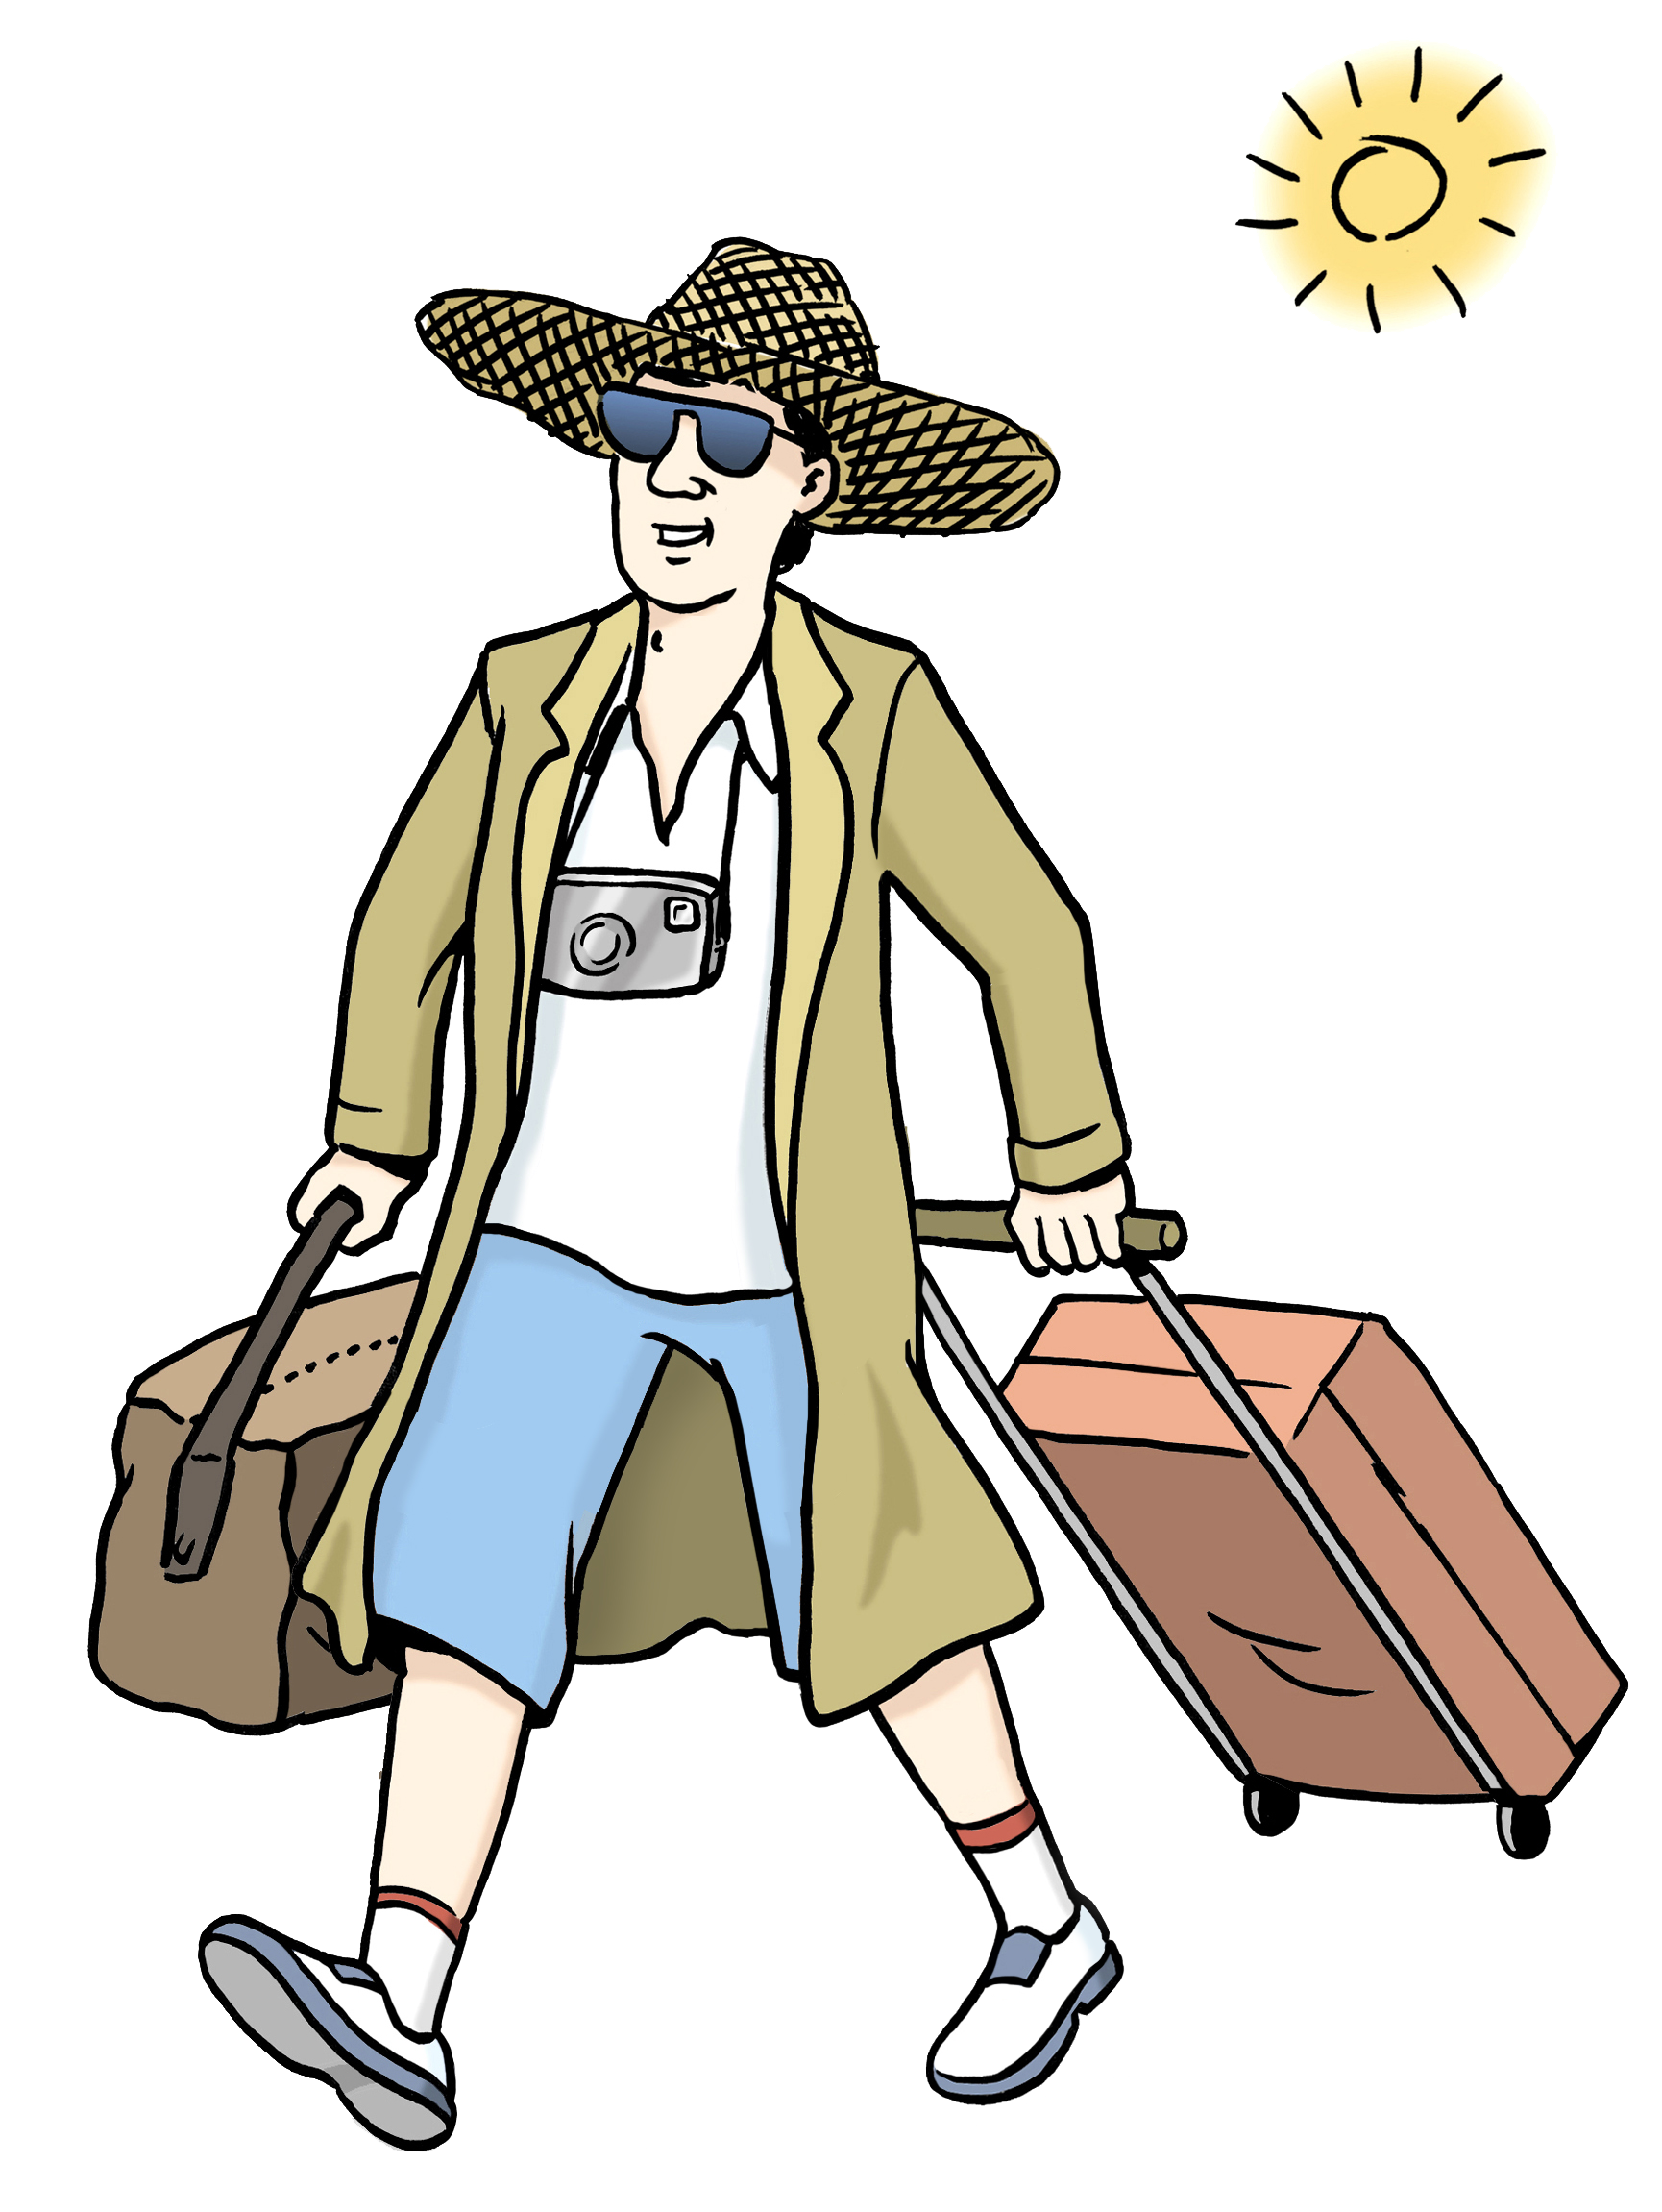 Zeichnung eines Mannes mit Koffer, Sonnenhut und Sonnenbrille.